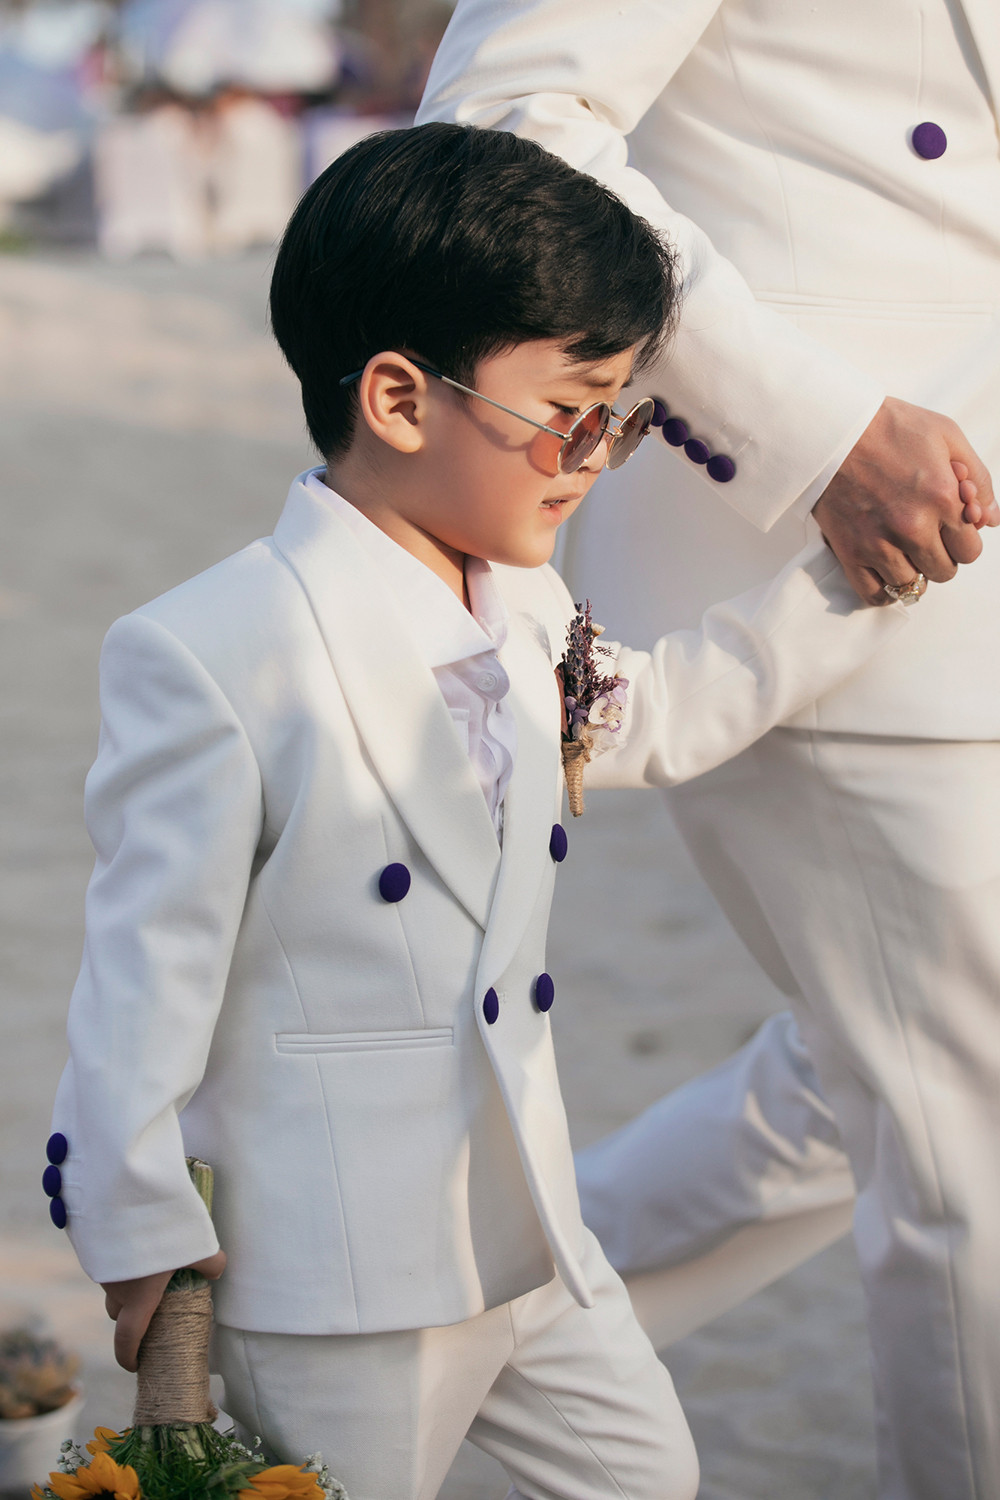 Con trai 3 tuổi của Đàm Vĩnh Hưng lần đầu diễn thời trang cùng bố - 4